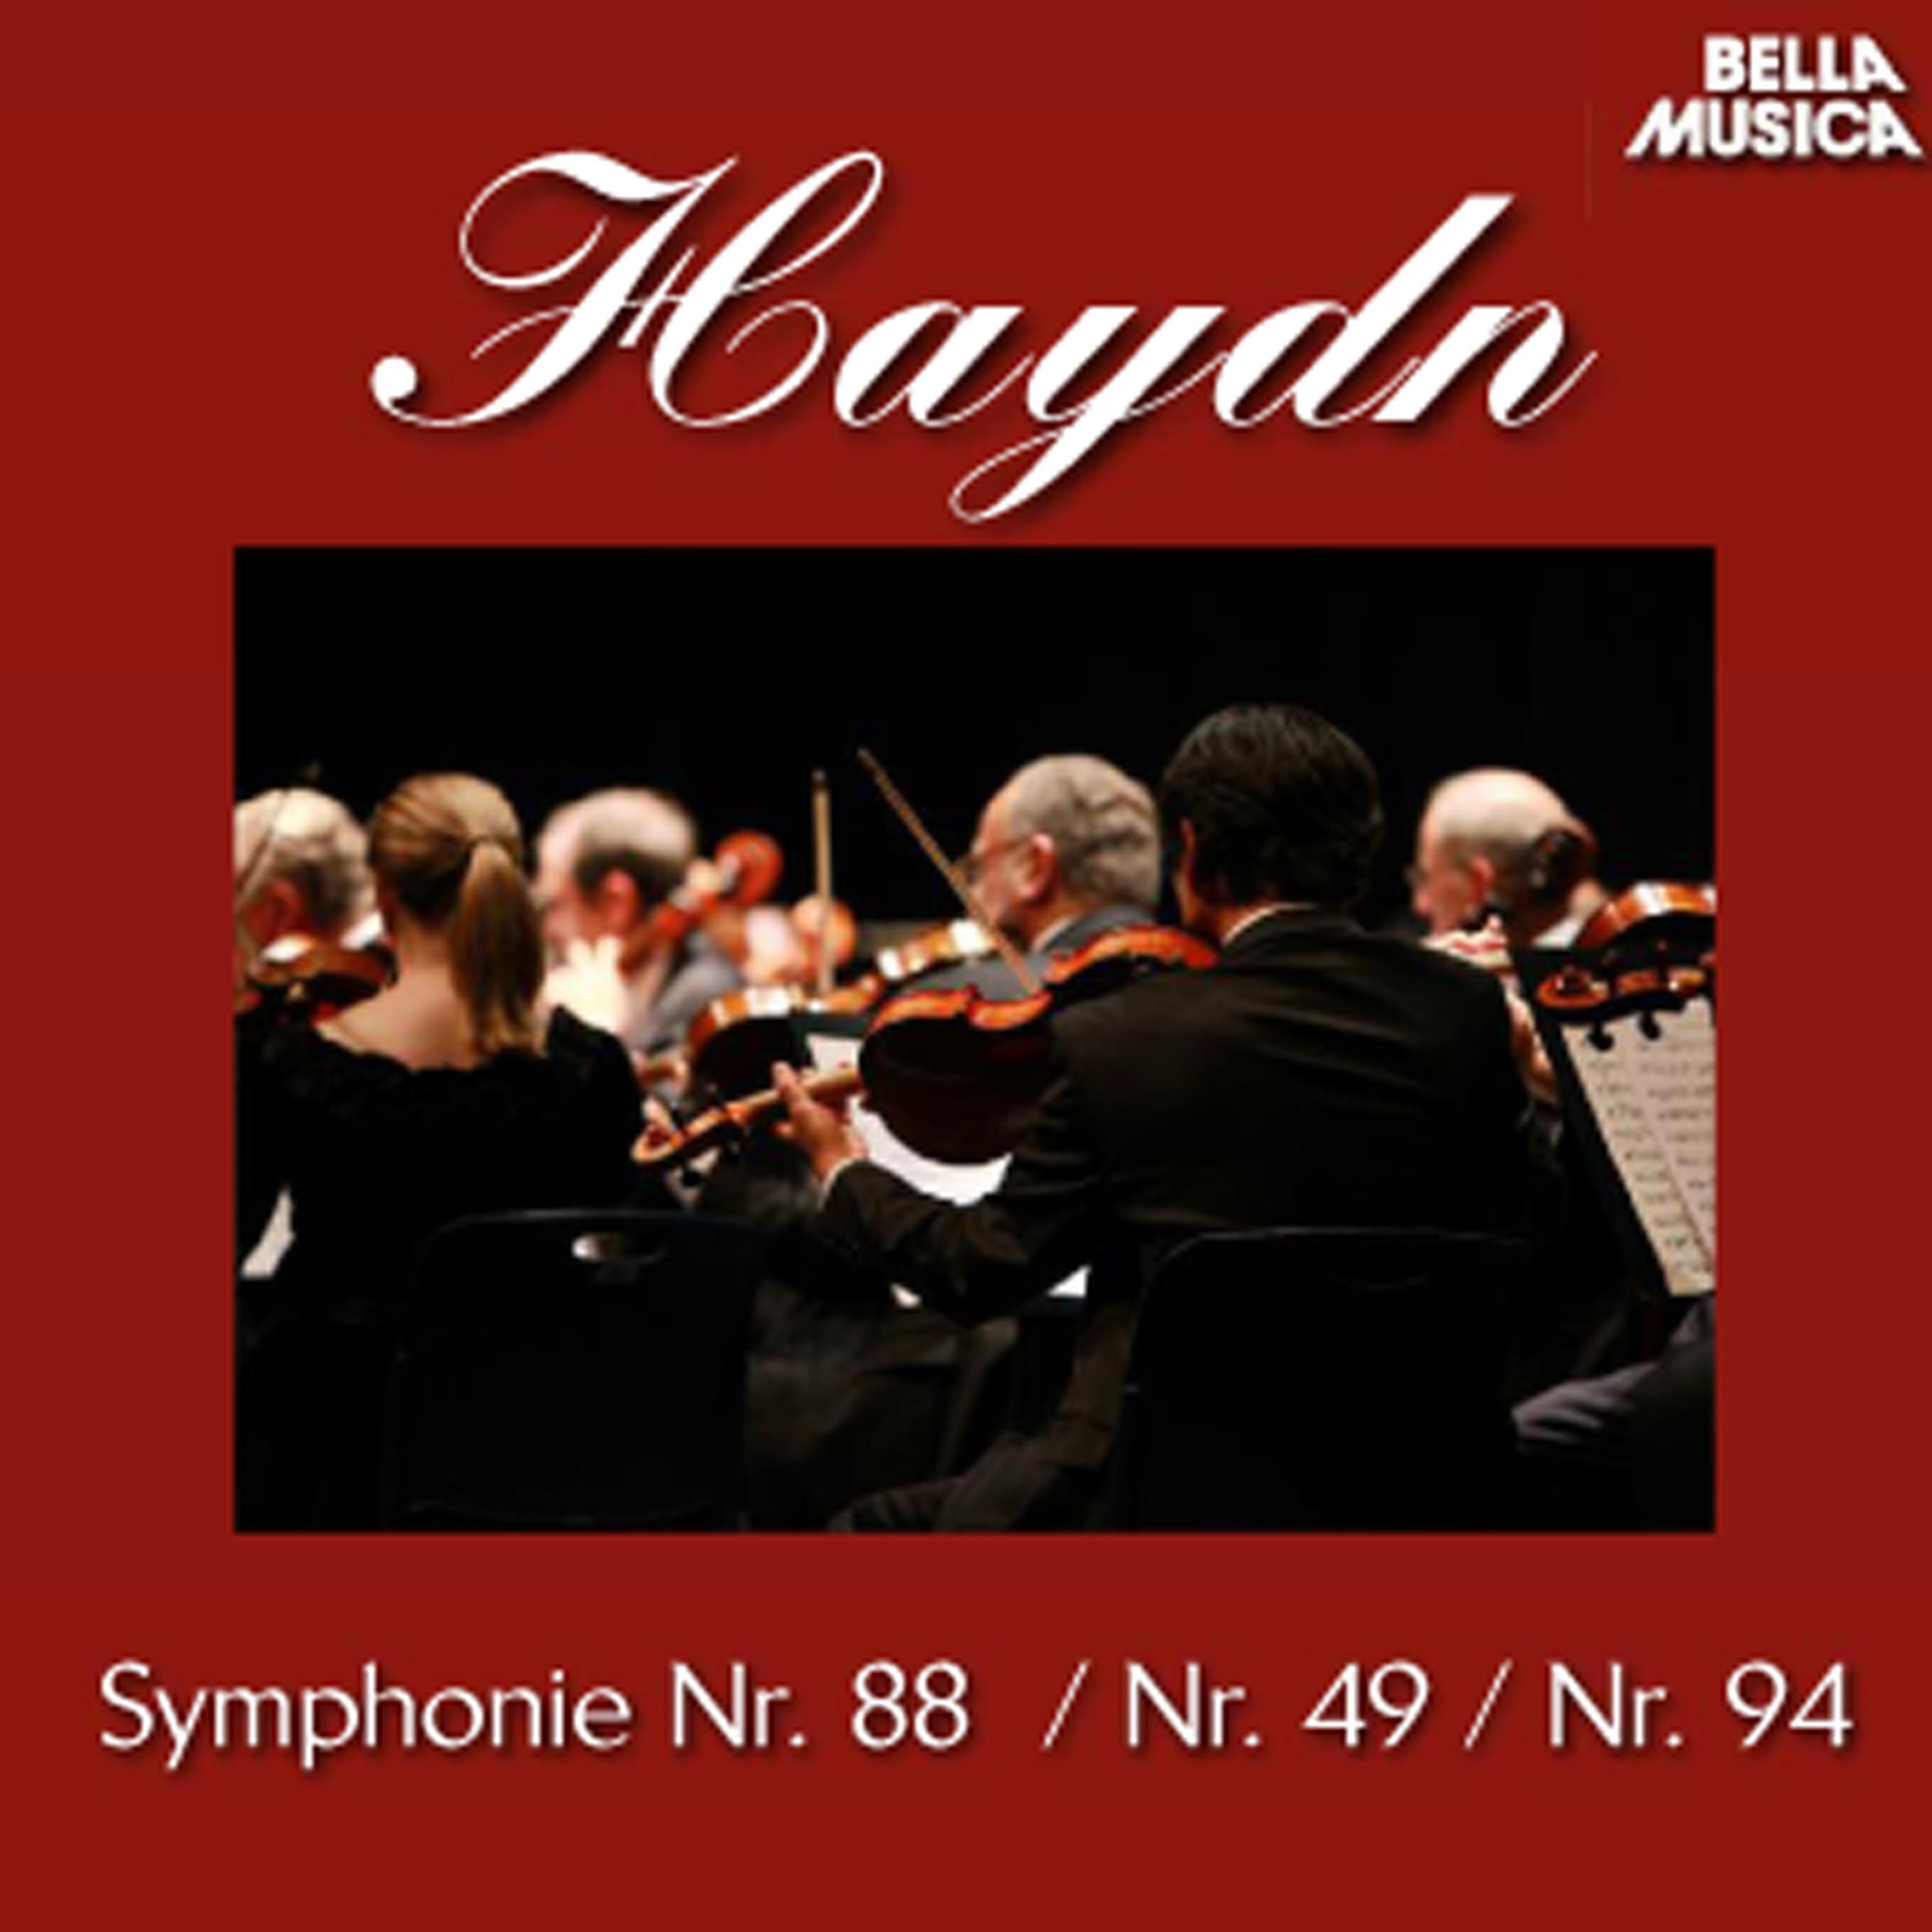 Sinfonie No. 88 fü r Orchester in G Major: III. Menuetto  Allegretto